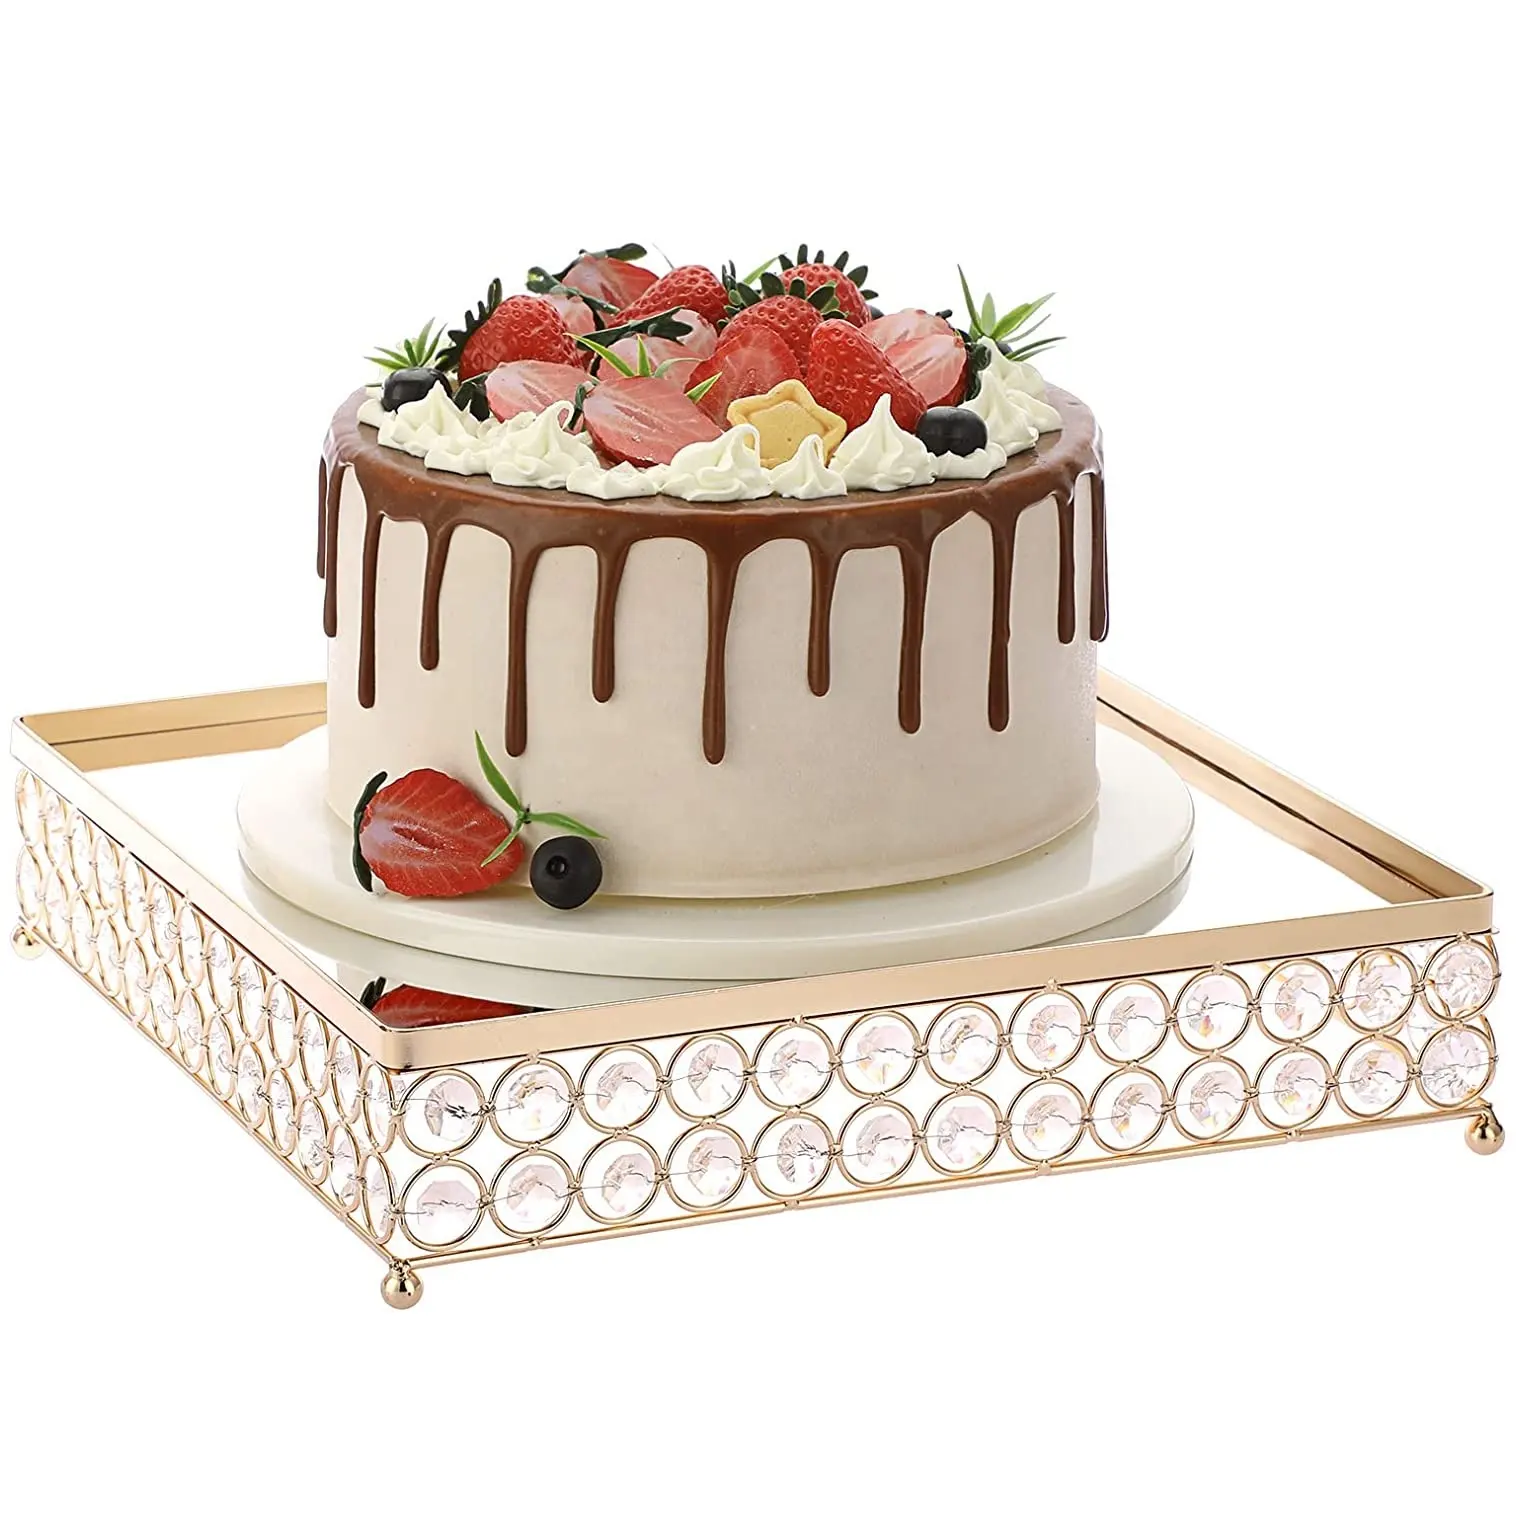 एकल स्तरीय मनके केक खड़े हो जाओ गोल्डन रंग चौकोर आकार दर्पण शीर्ष ऊंचा केक गेंद के आकार के साथ खड़े पैर